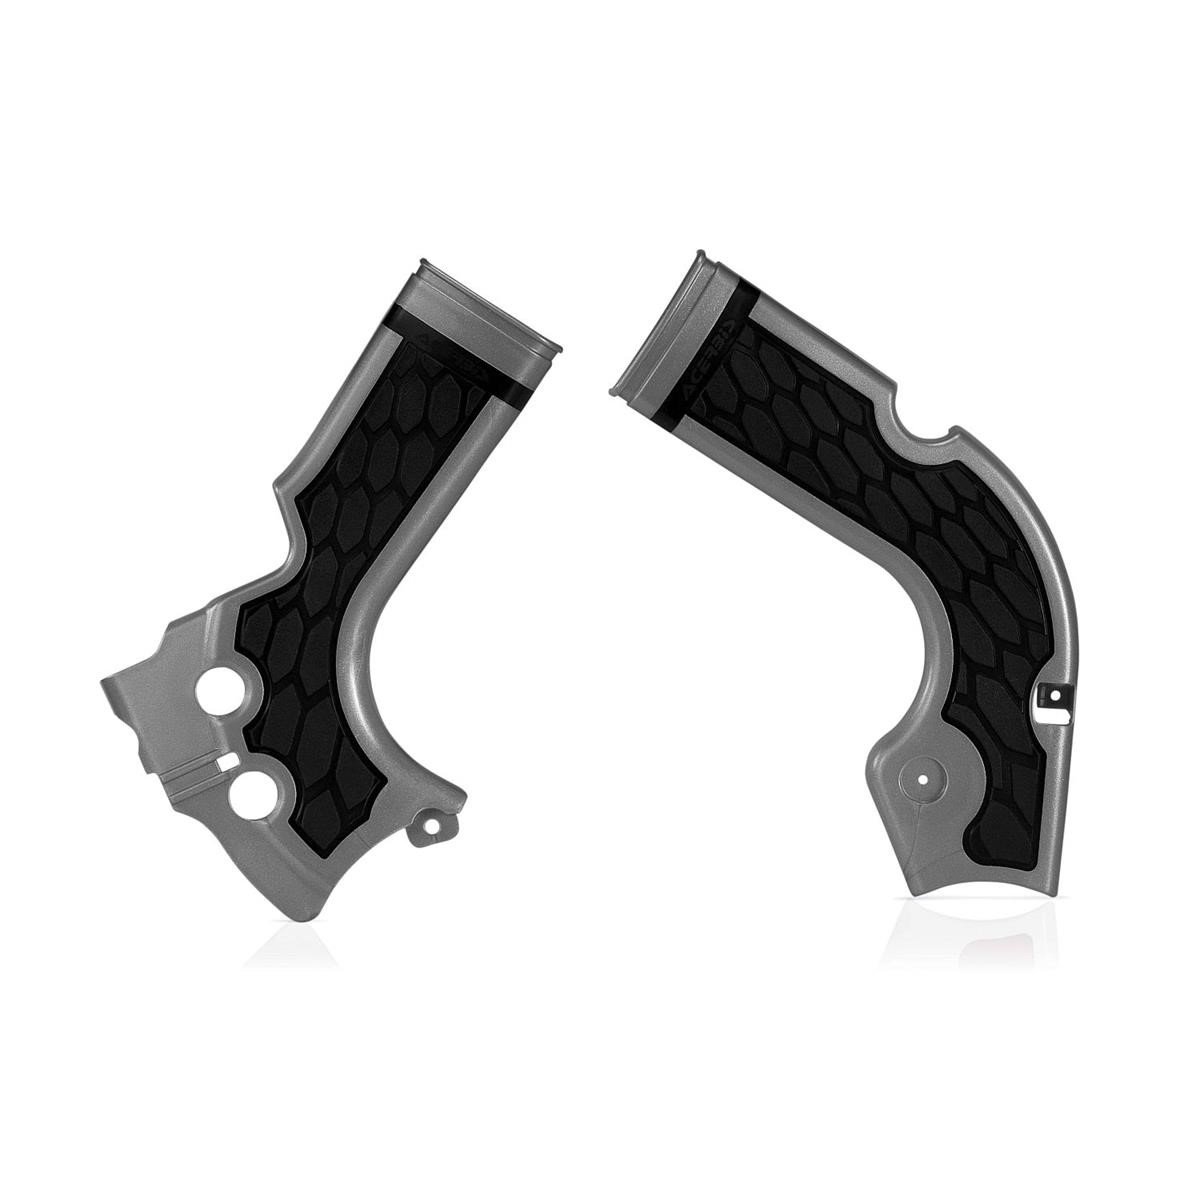 Acerbis Protections de Cadre Anti-Dérapante X-Grip Honda CRF 250 14-17, CRF 450 13-16, Argent/Noir